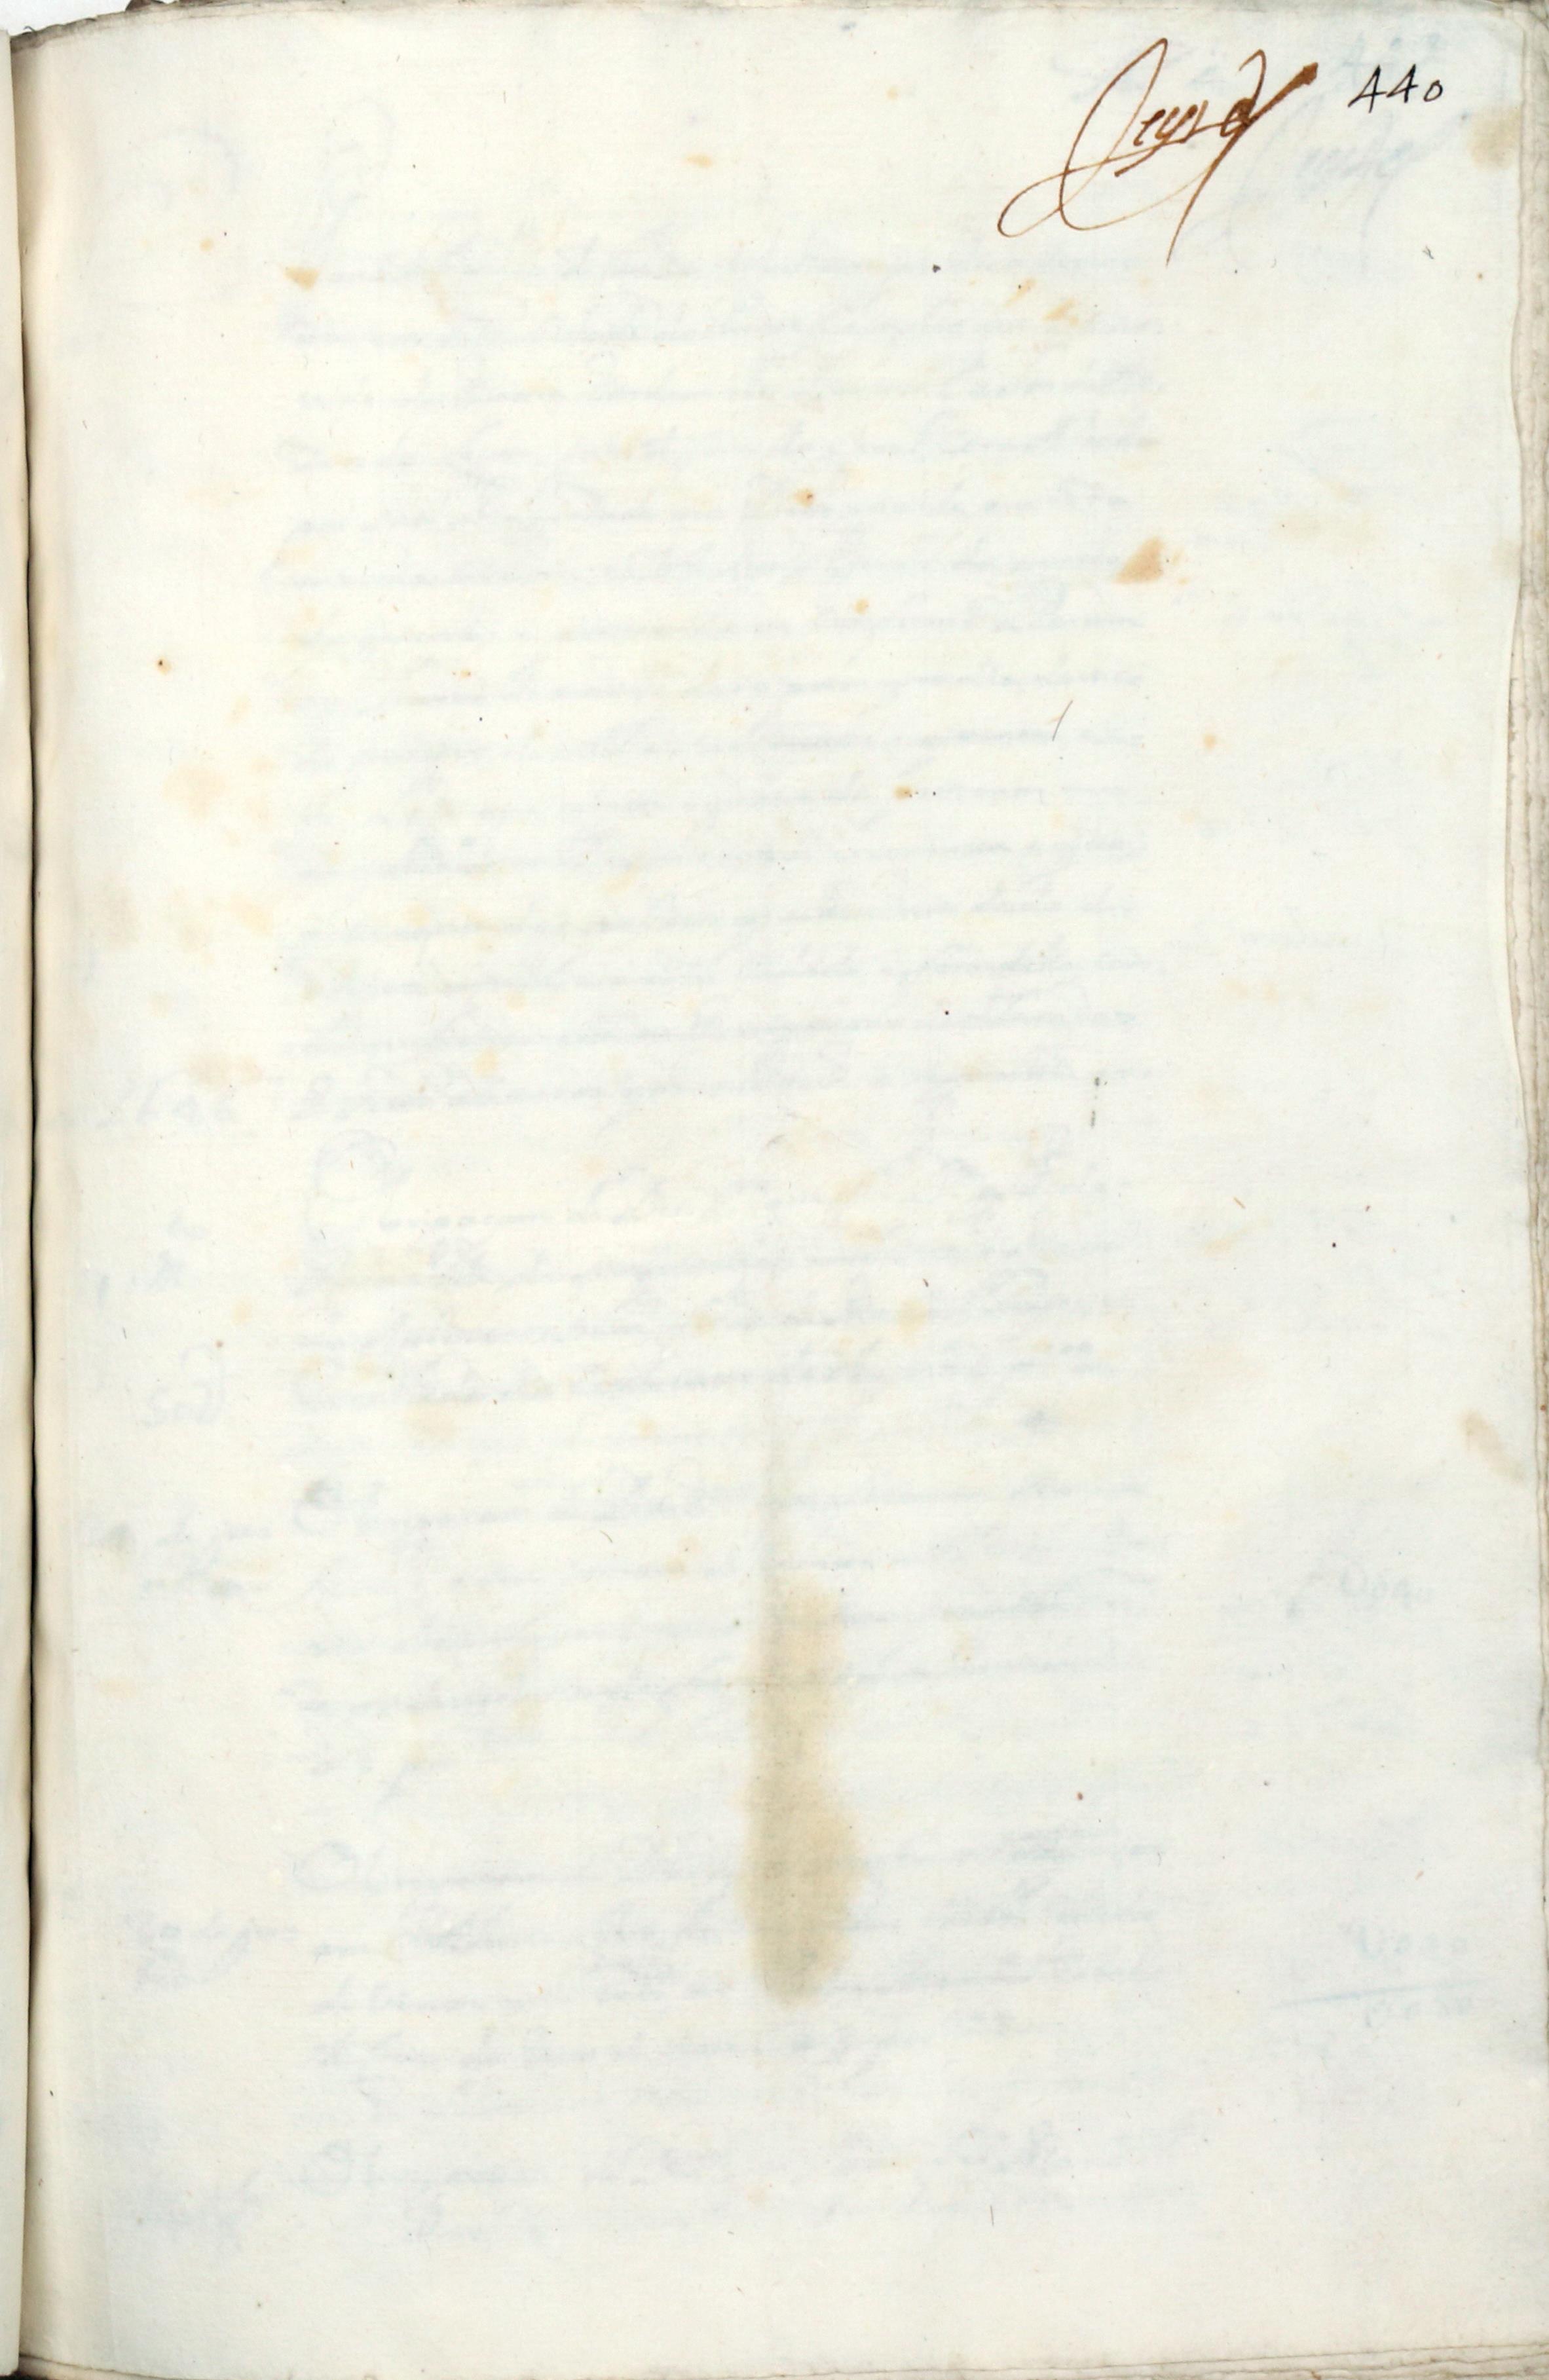 Certidão feita pelo tabelião das notas da Manuel Coelho da Cunha sobre o dinheiro entregue entre 1686 e 1698